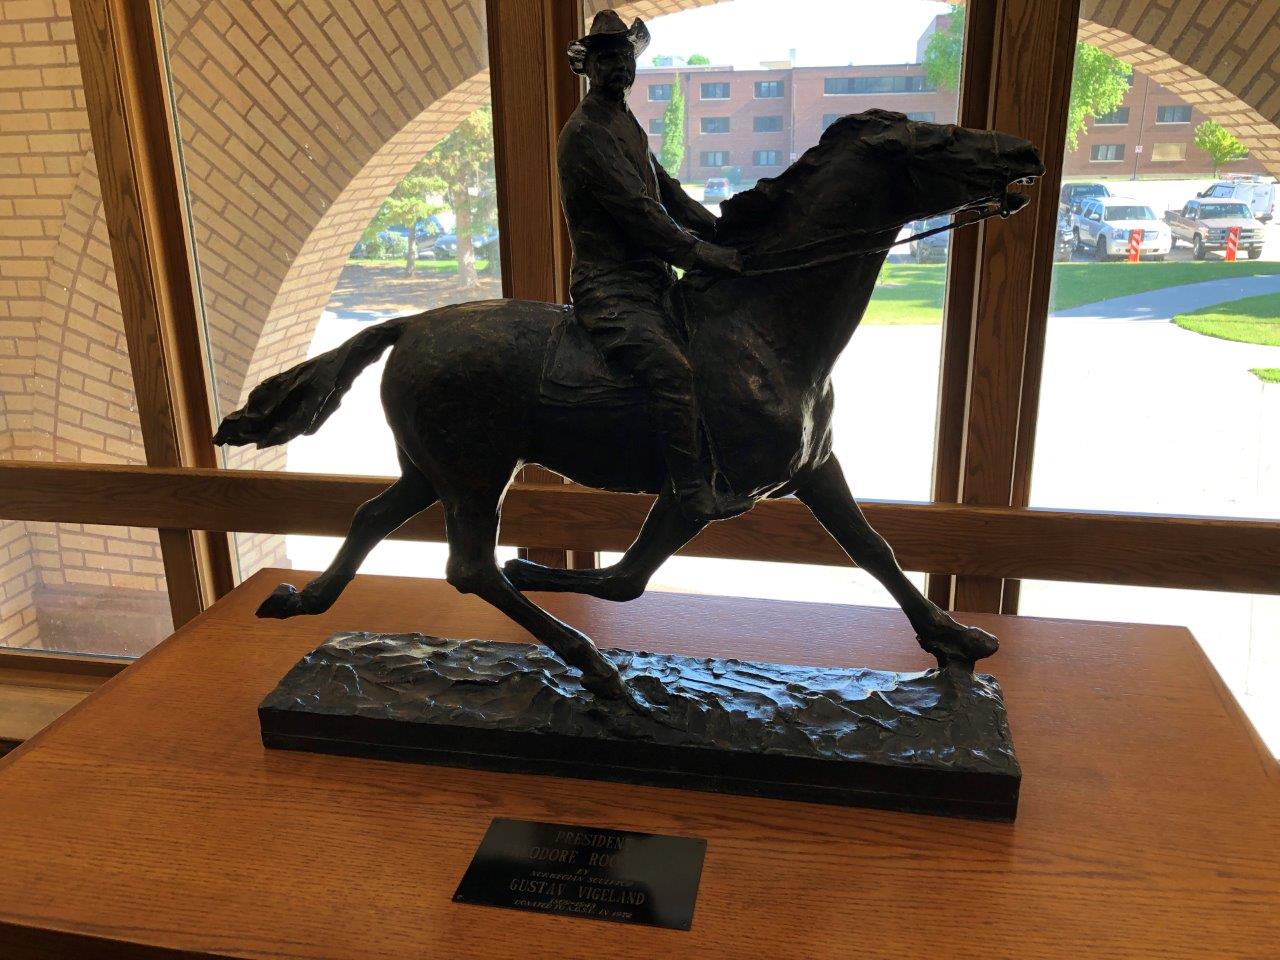 Theodore Roosevelt statue at North Dakota State University